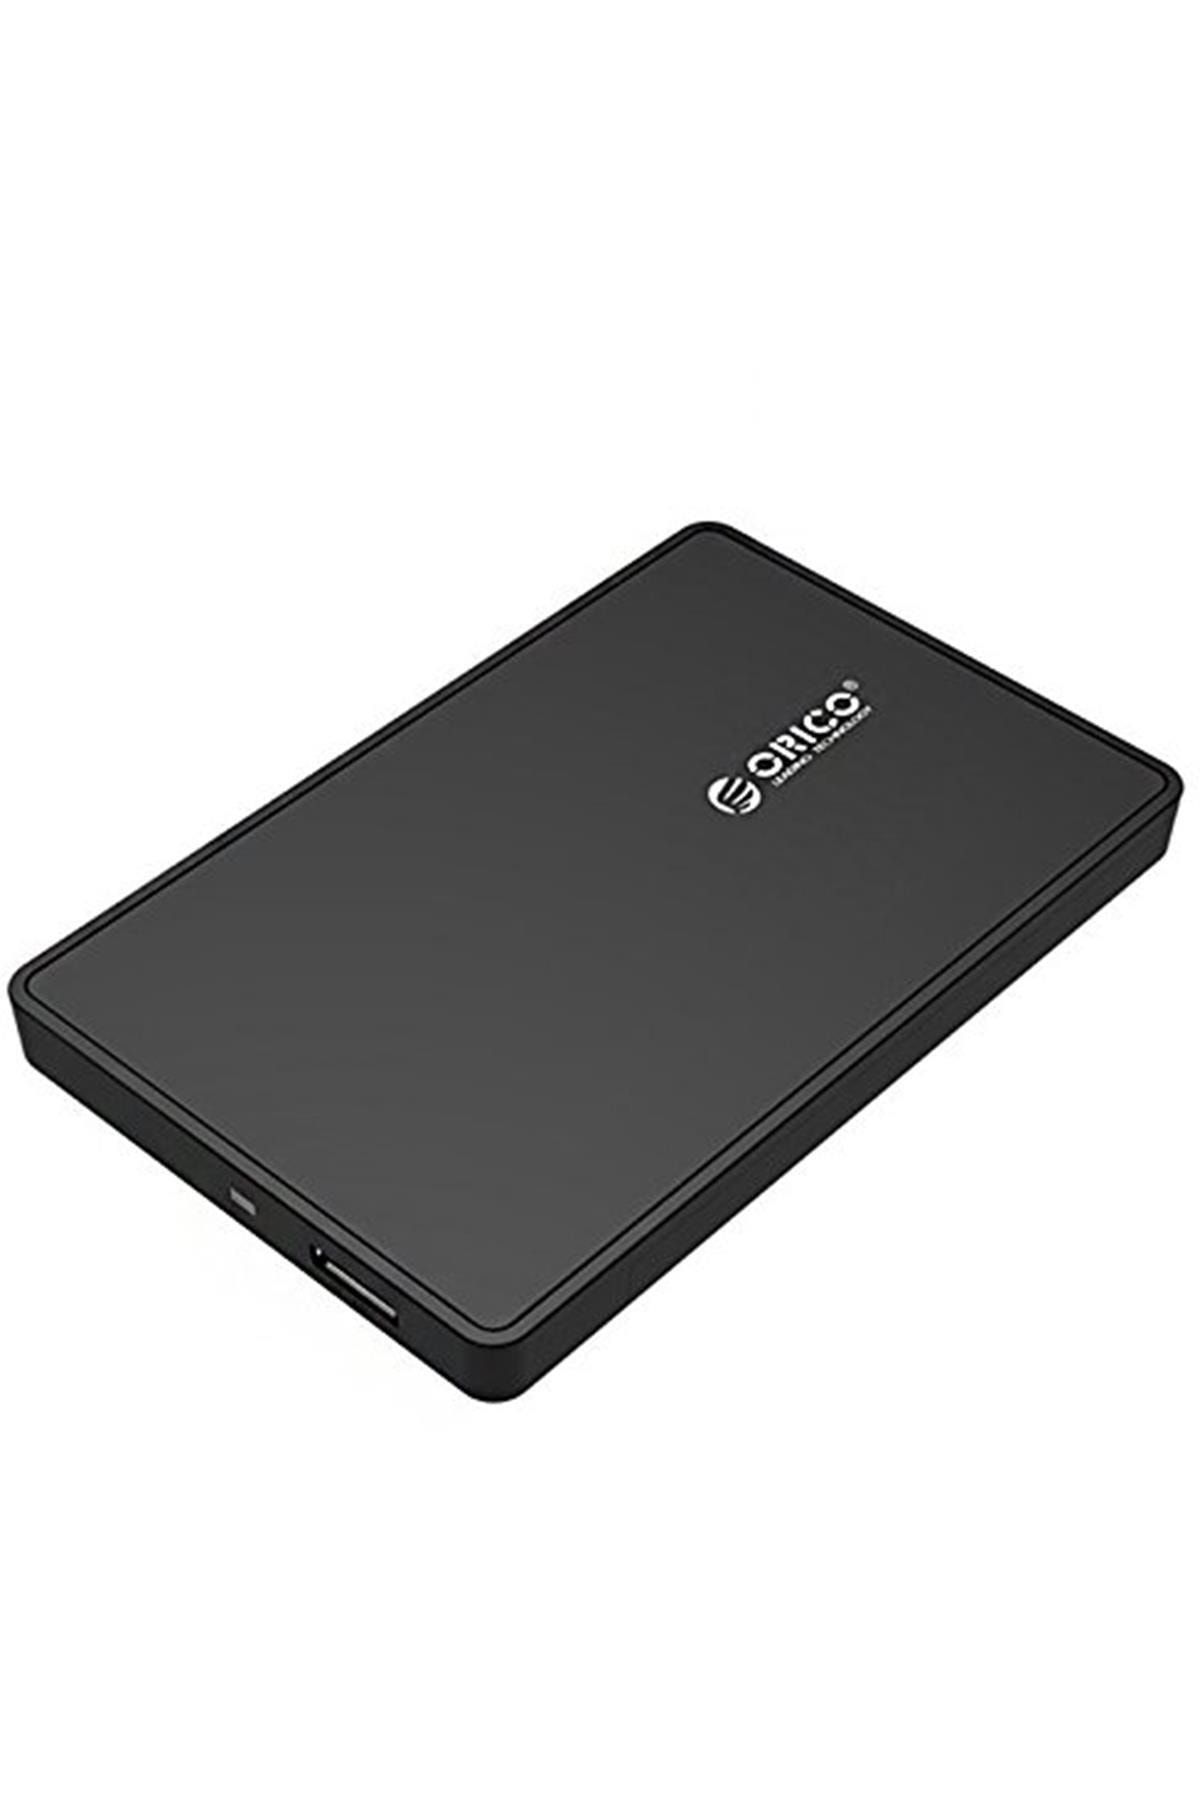 Orico 2588us3-bk Taşınabilir Alet 6.35 Cm Sata Usb 3.0 Harici Sabit Disk